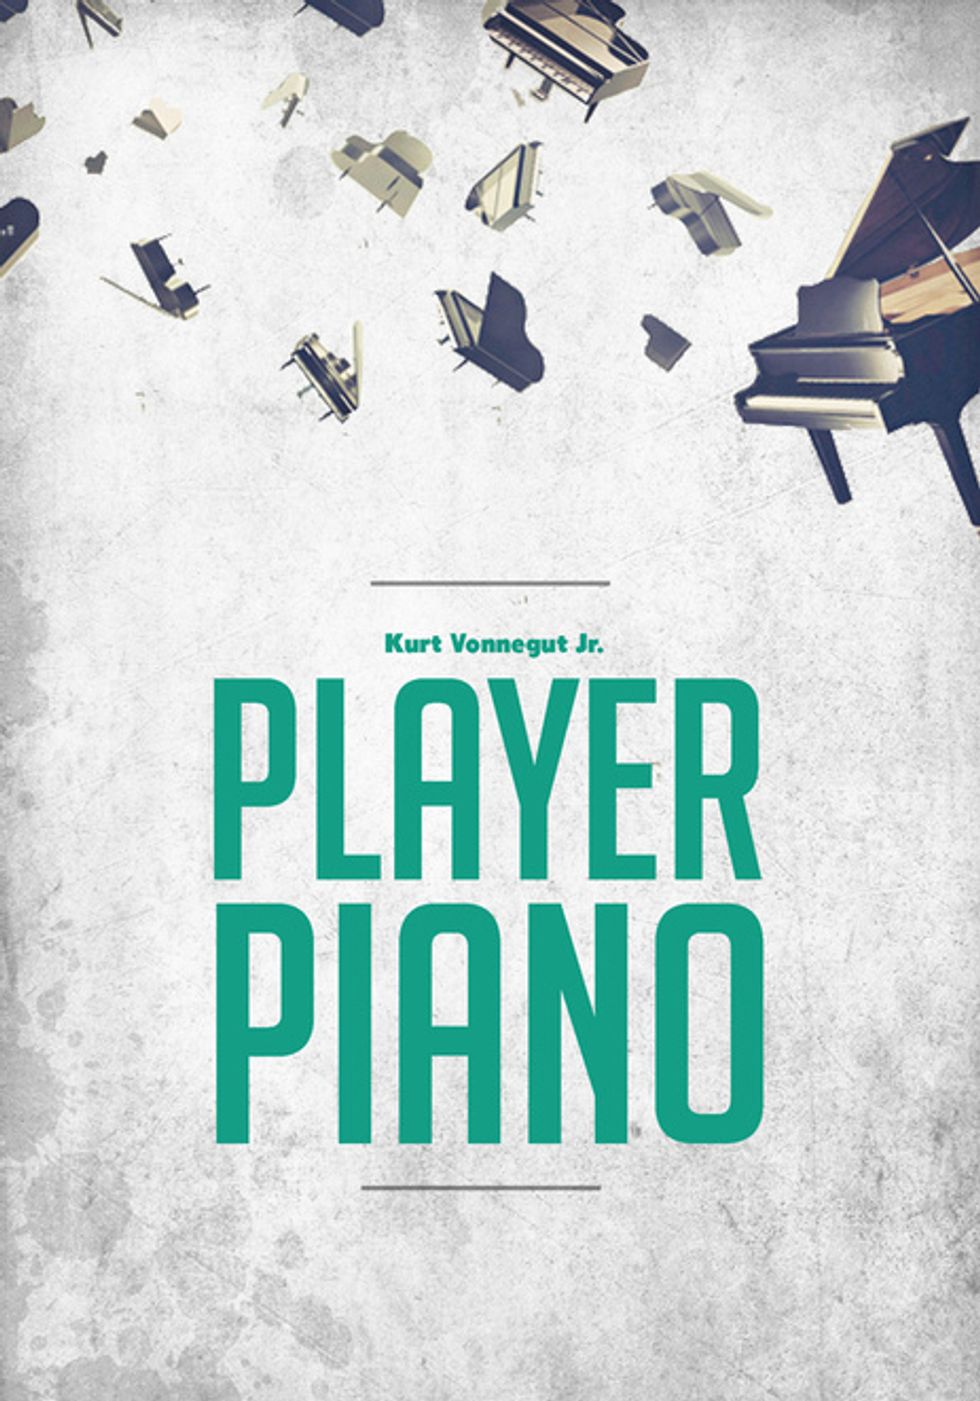 Kurt Vonnegut Jr. "Player Piano" 